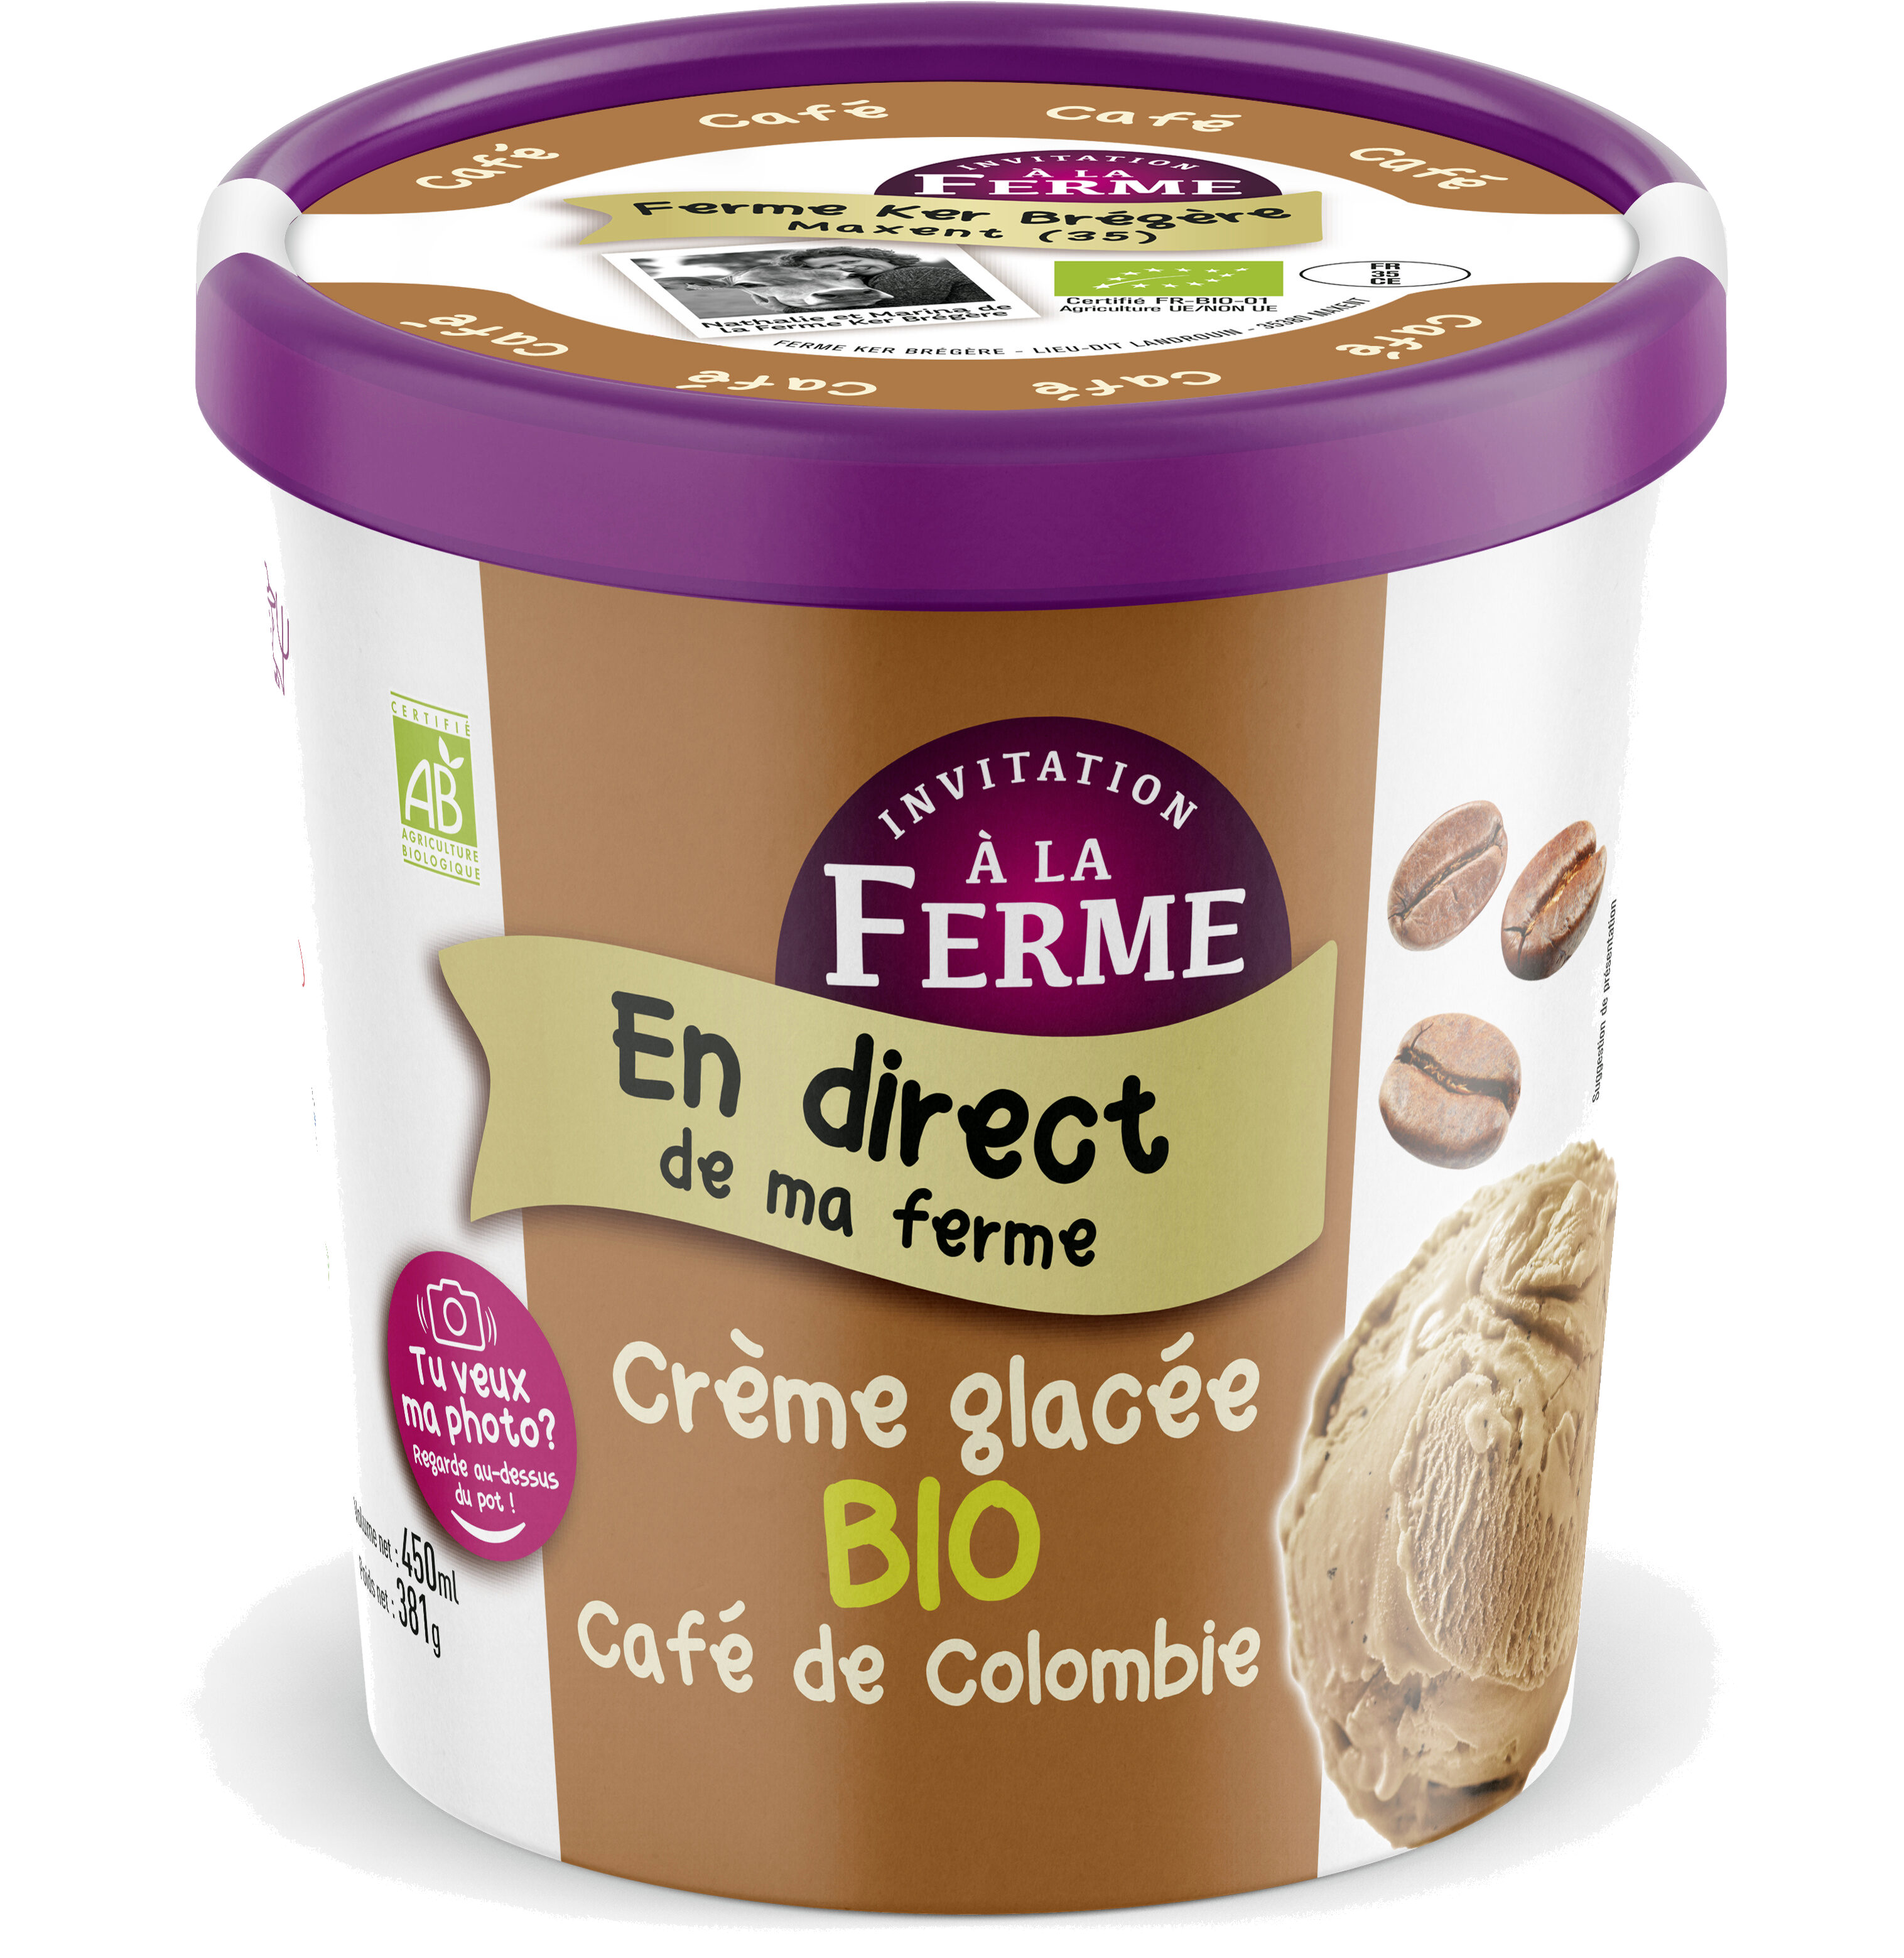 Crème glacée bio au Café de Colombie - Product - fr